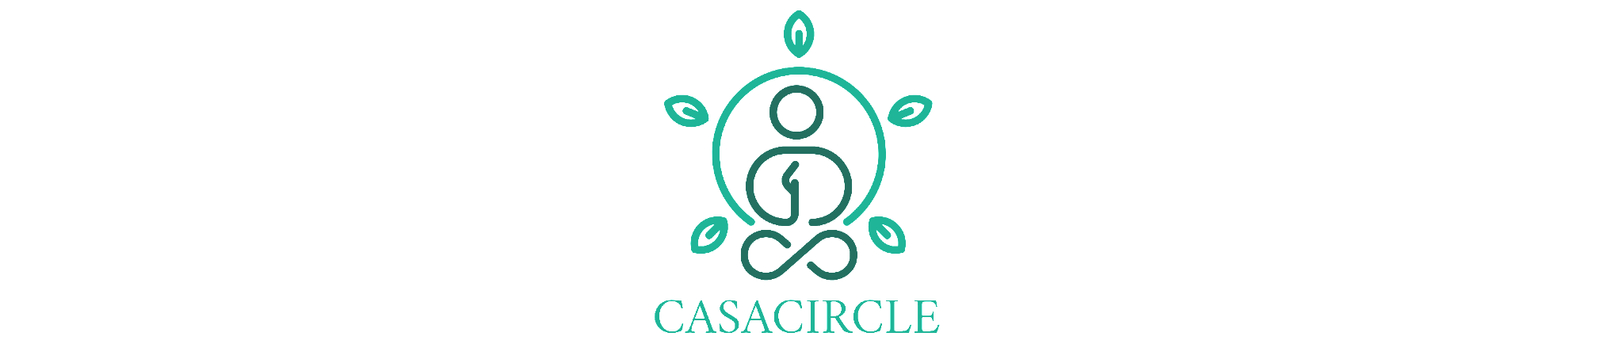 Casacircle